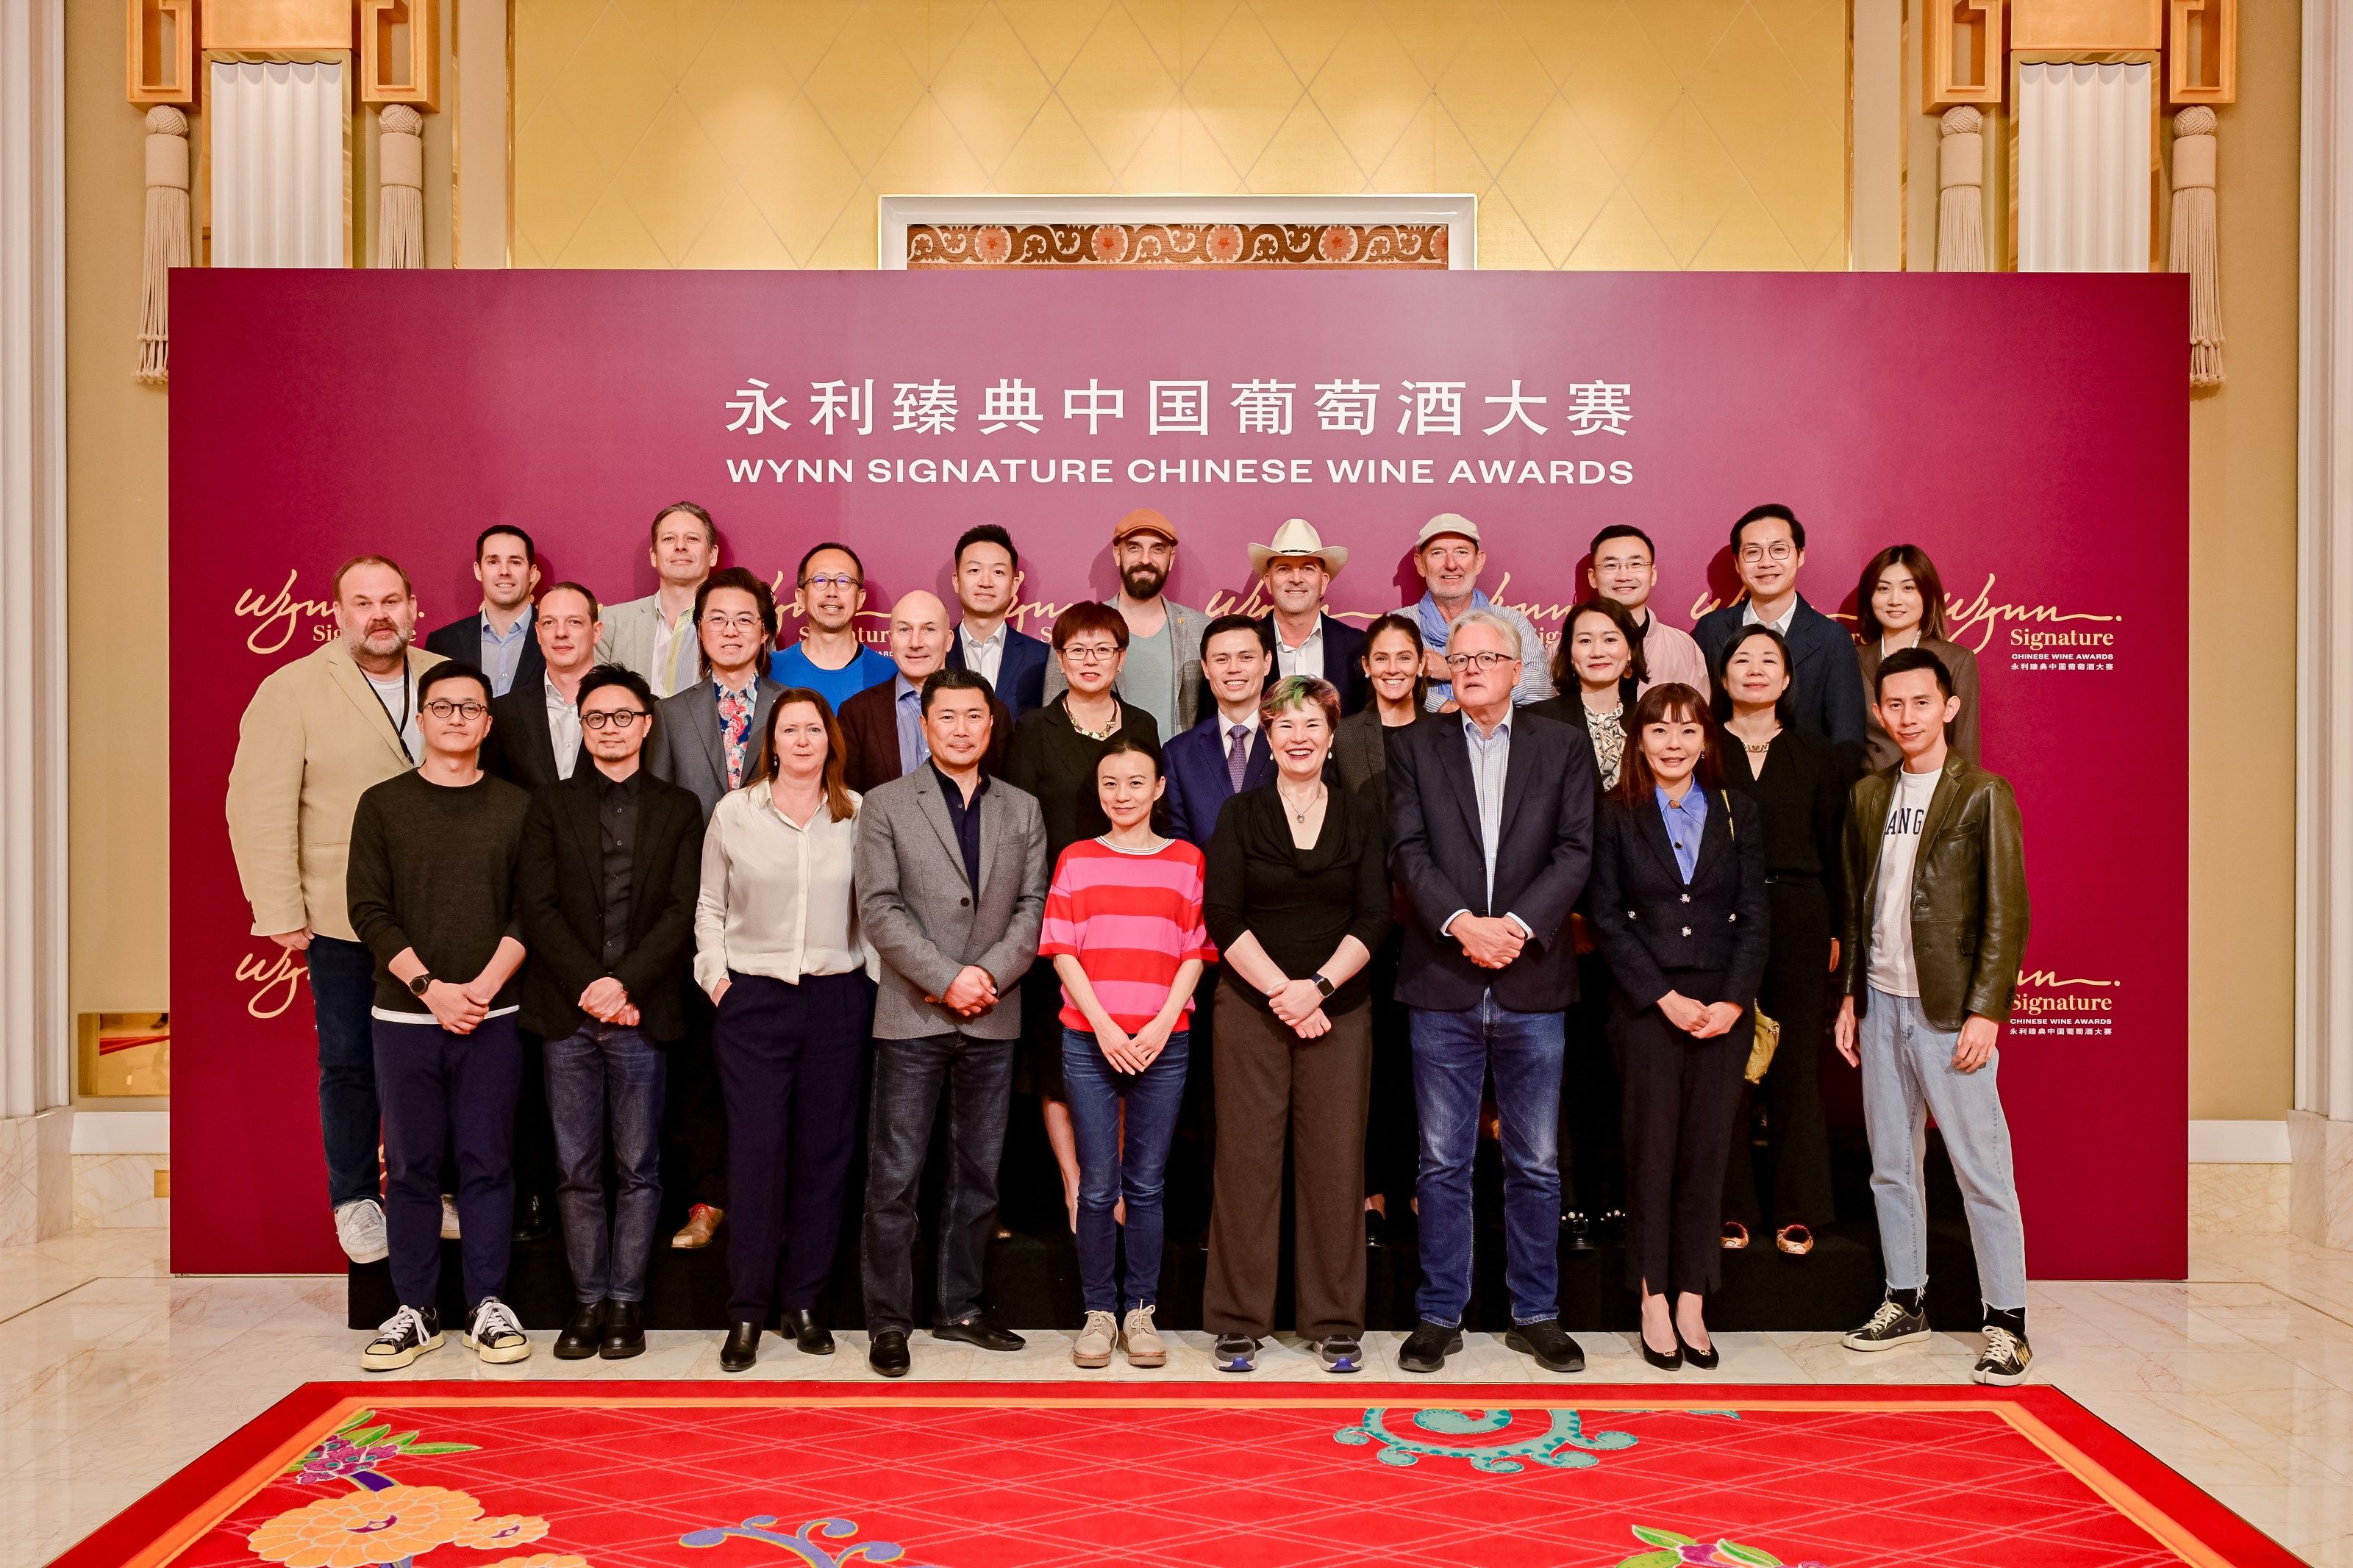 永 利举办全球大型以国际标准评审的中国葡萄酒大赛